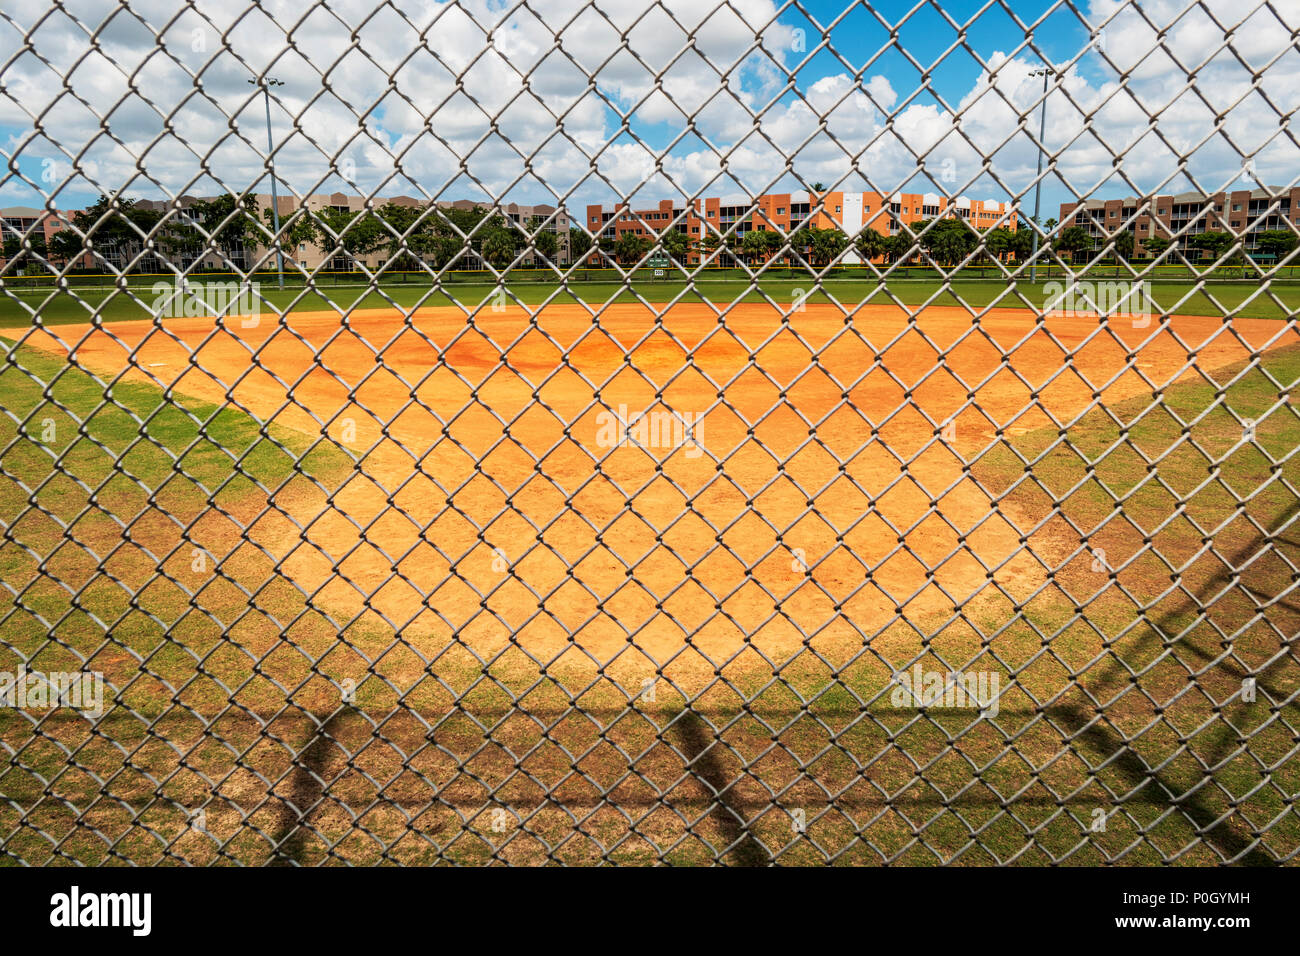 Parco pubblico di diamante di baseball visto attraverso il ciclone recinzione; South Central Florida, Stati Uniti d'America Foto Stock